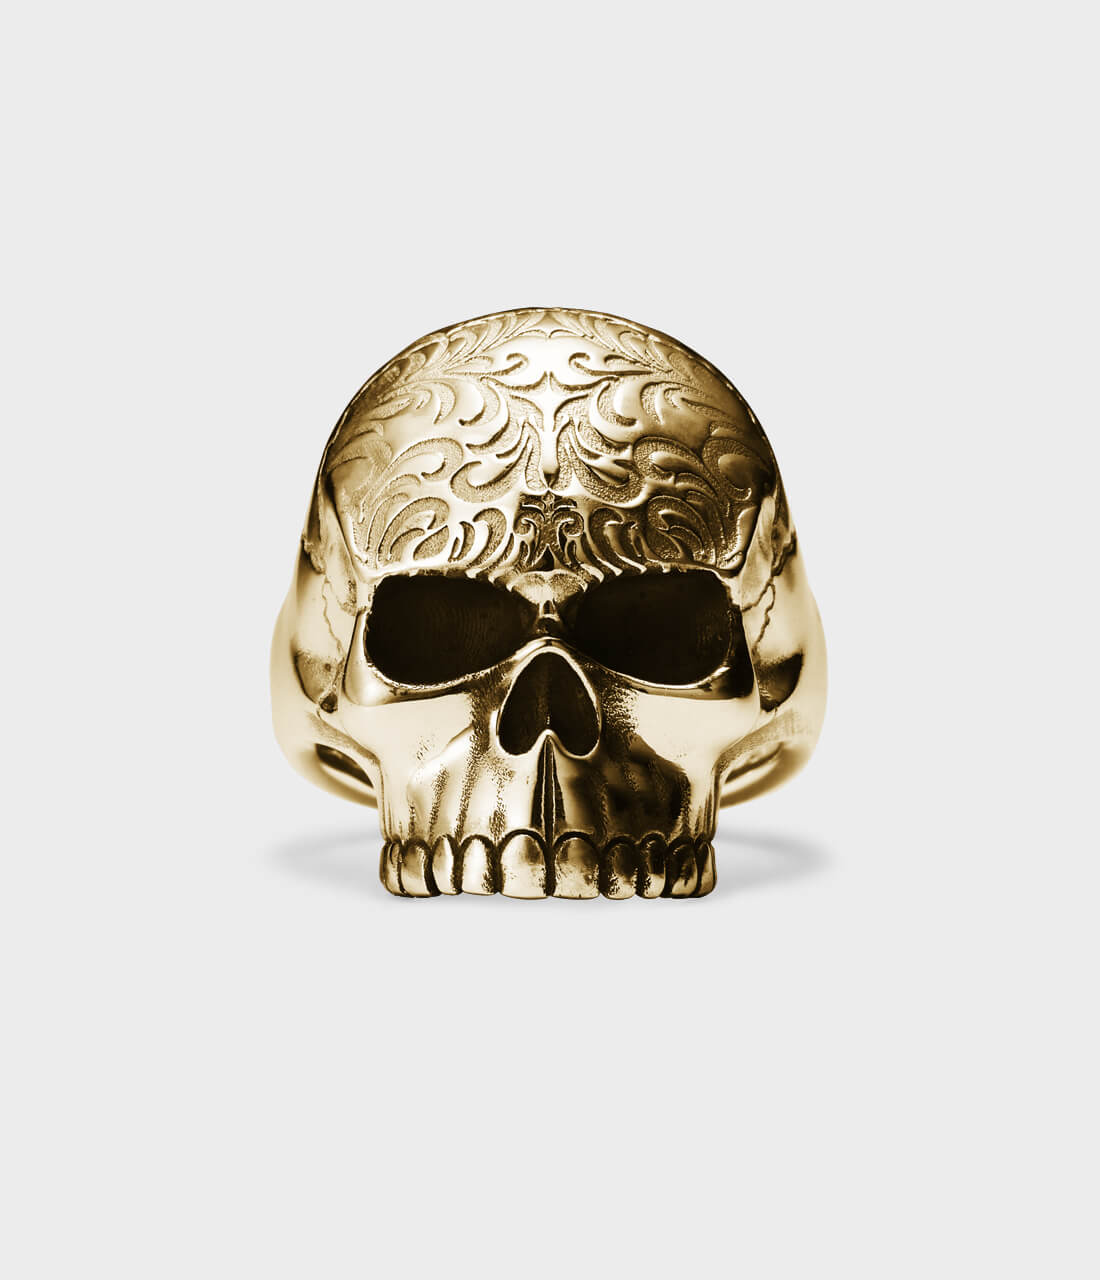 Tattoo Tribal Gold Skull Vector Art Stock Vector Royalty Free 141643603   Shutterstock